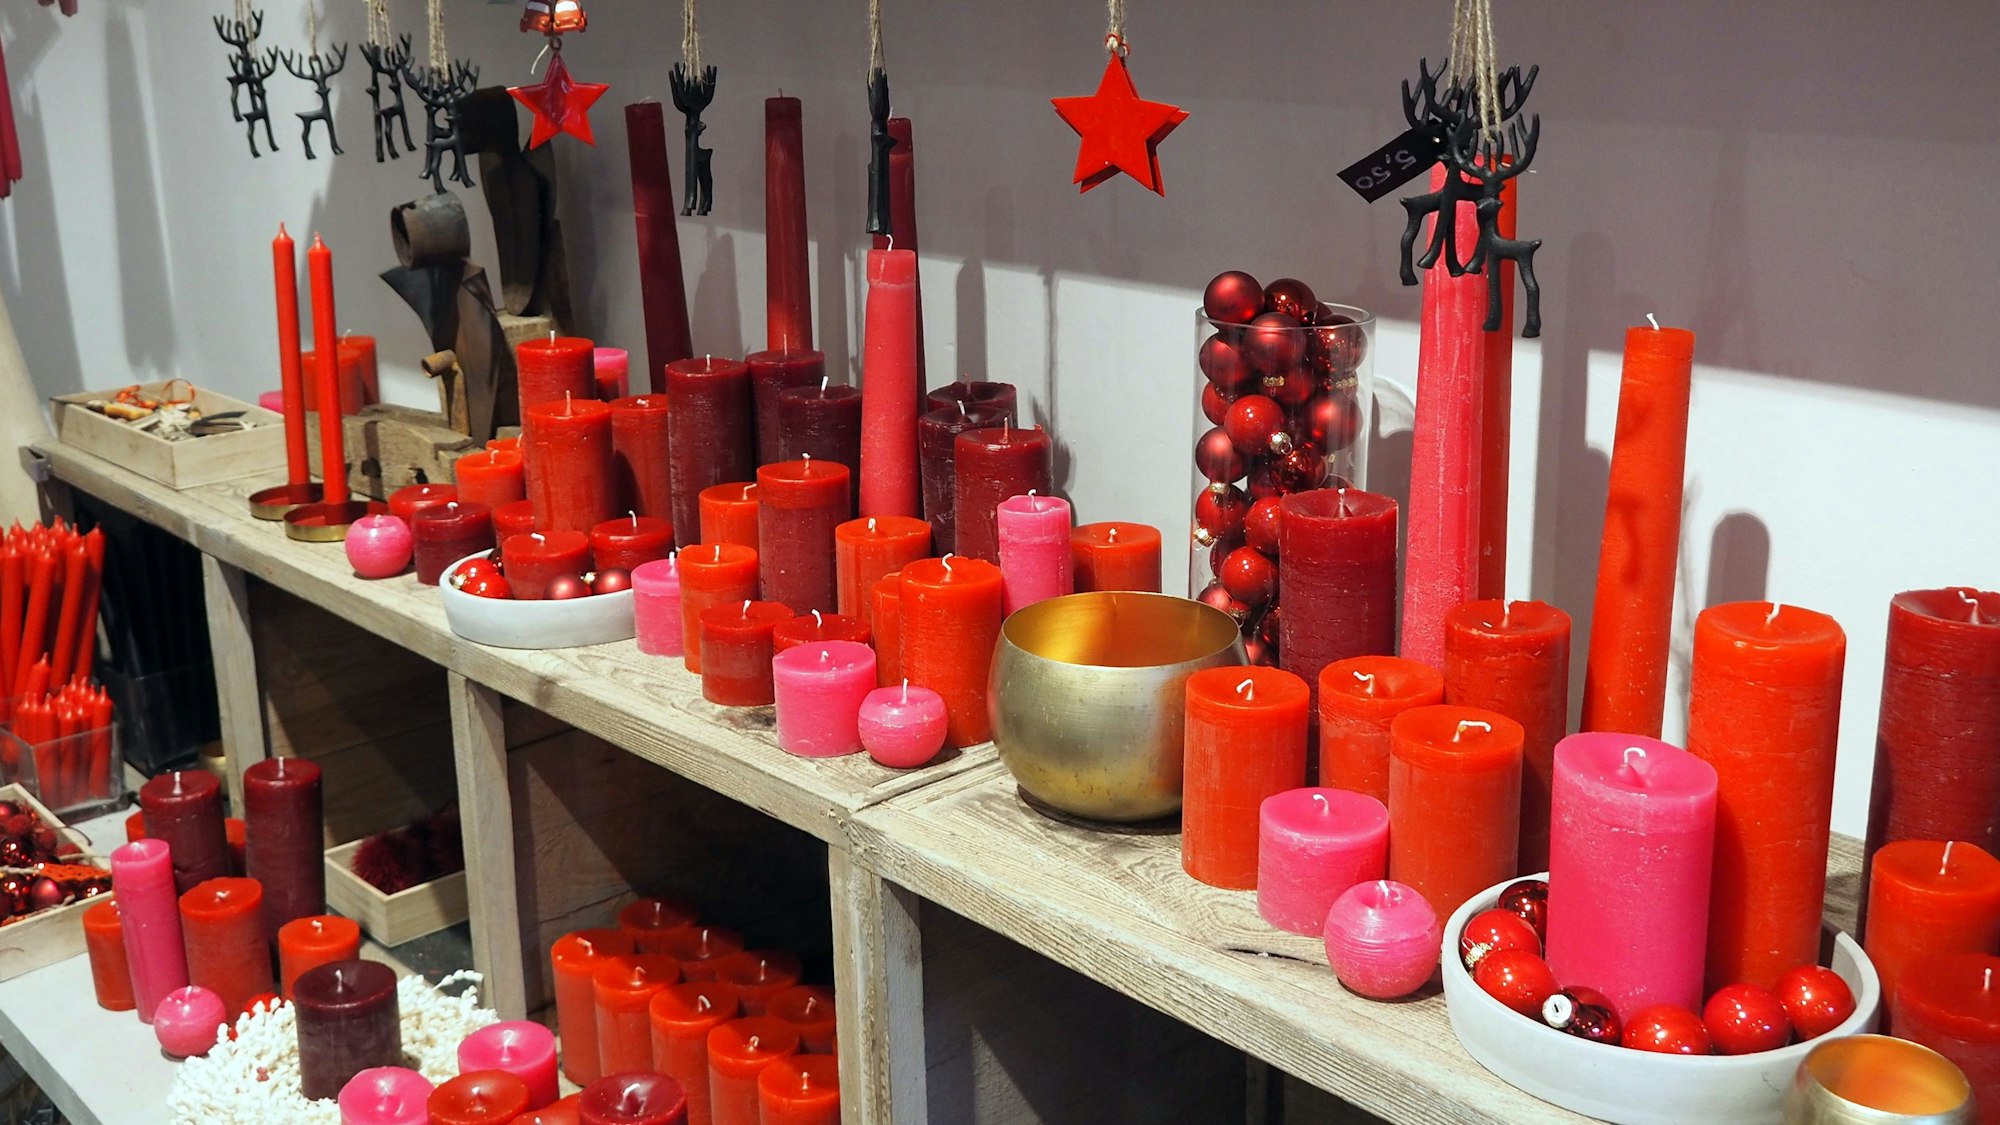 Ein Regal mit vielen Kerzen in Rottönen.